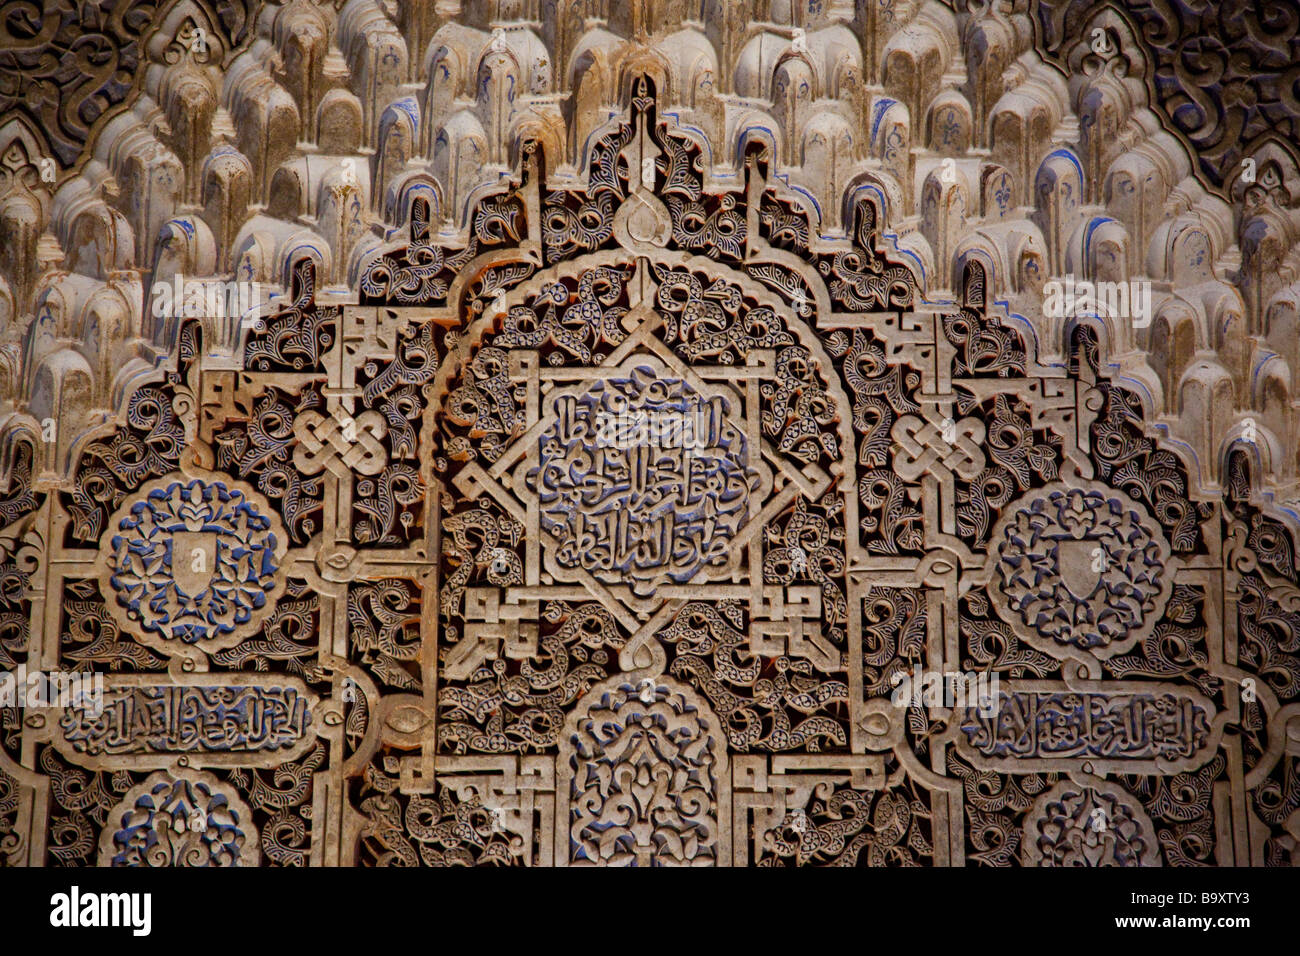 Patio de Los Leones im Palast der Alhambra in Granada Spanien Stockfoto